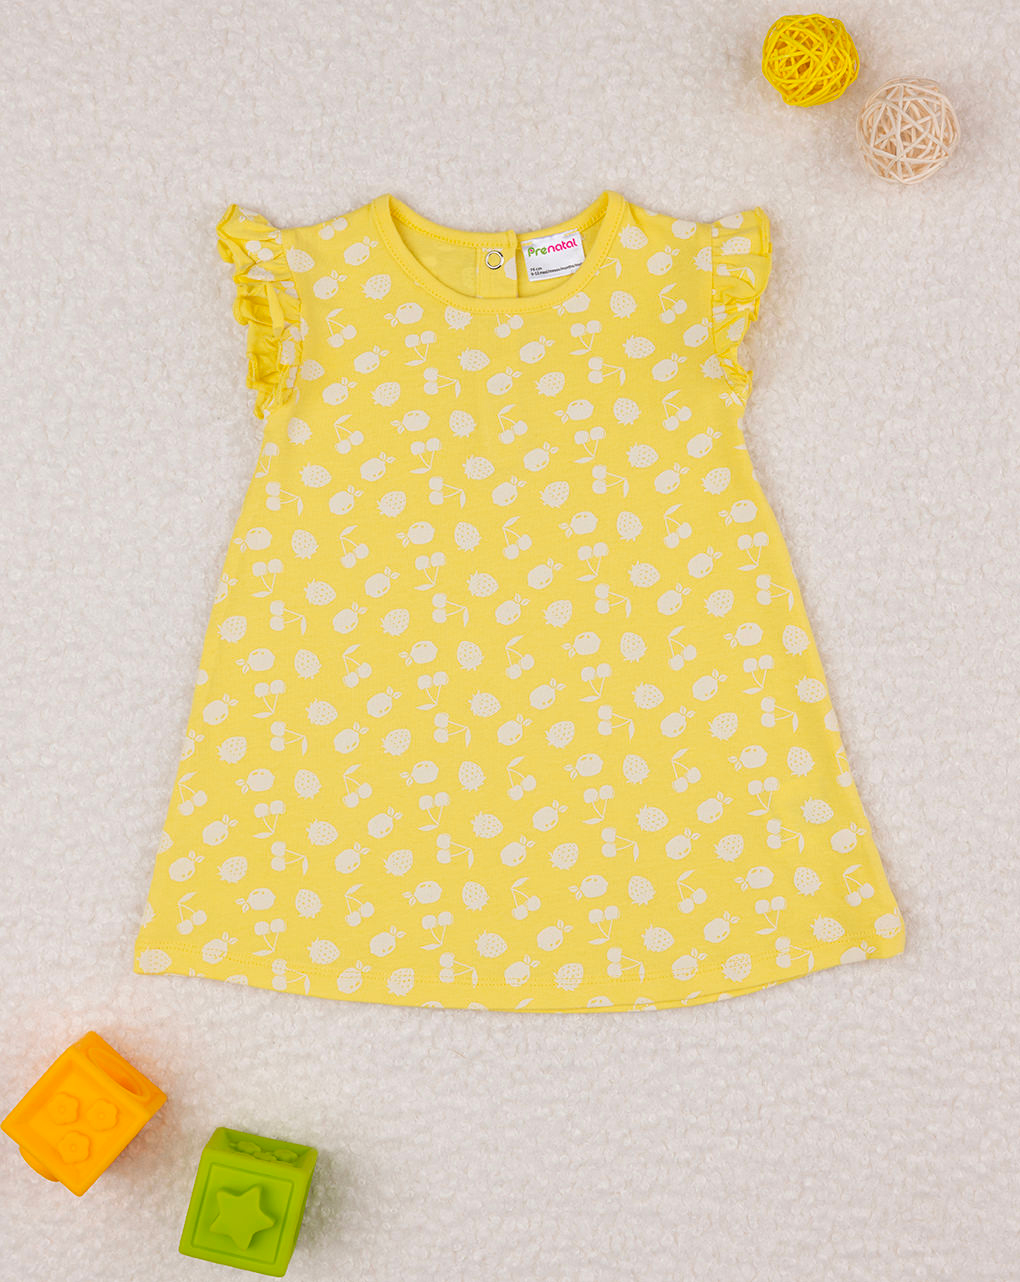 βρεφικό φόρεμα κίτρινο με φρούτα για κορίτσι